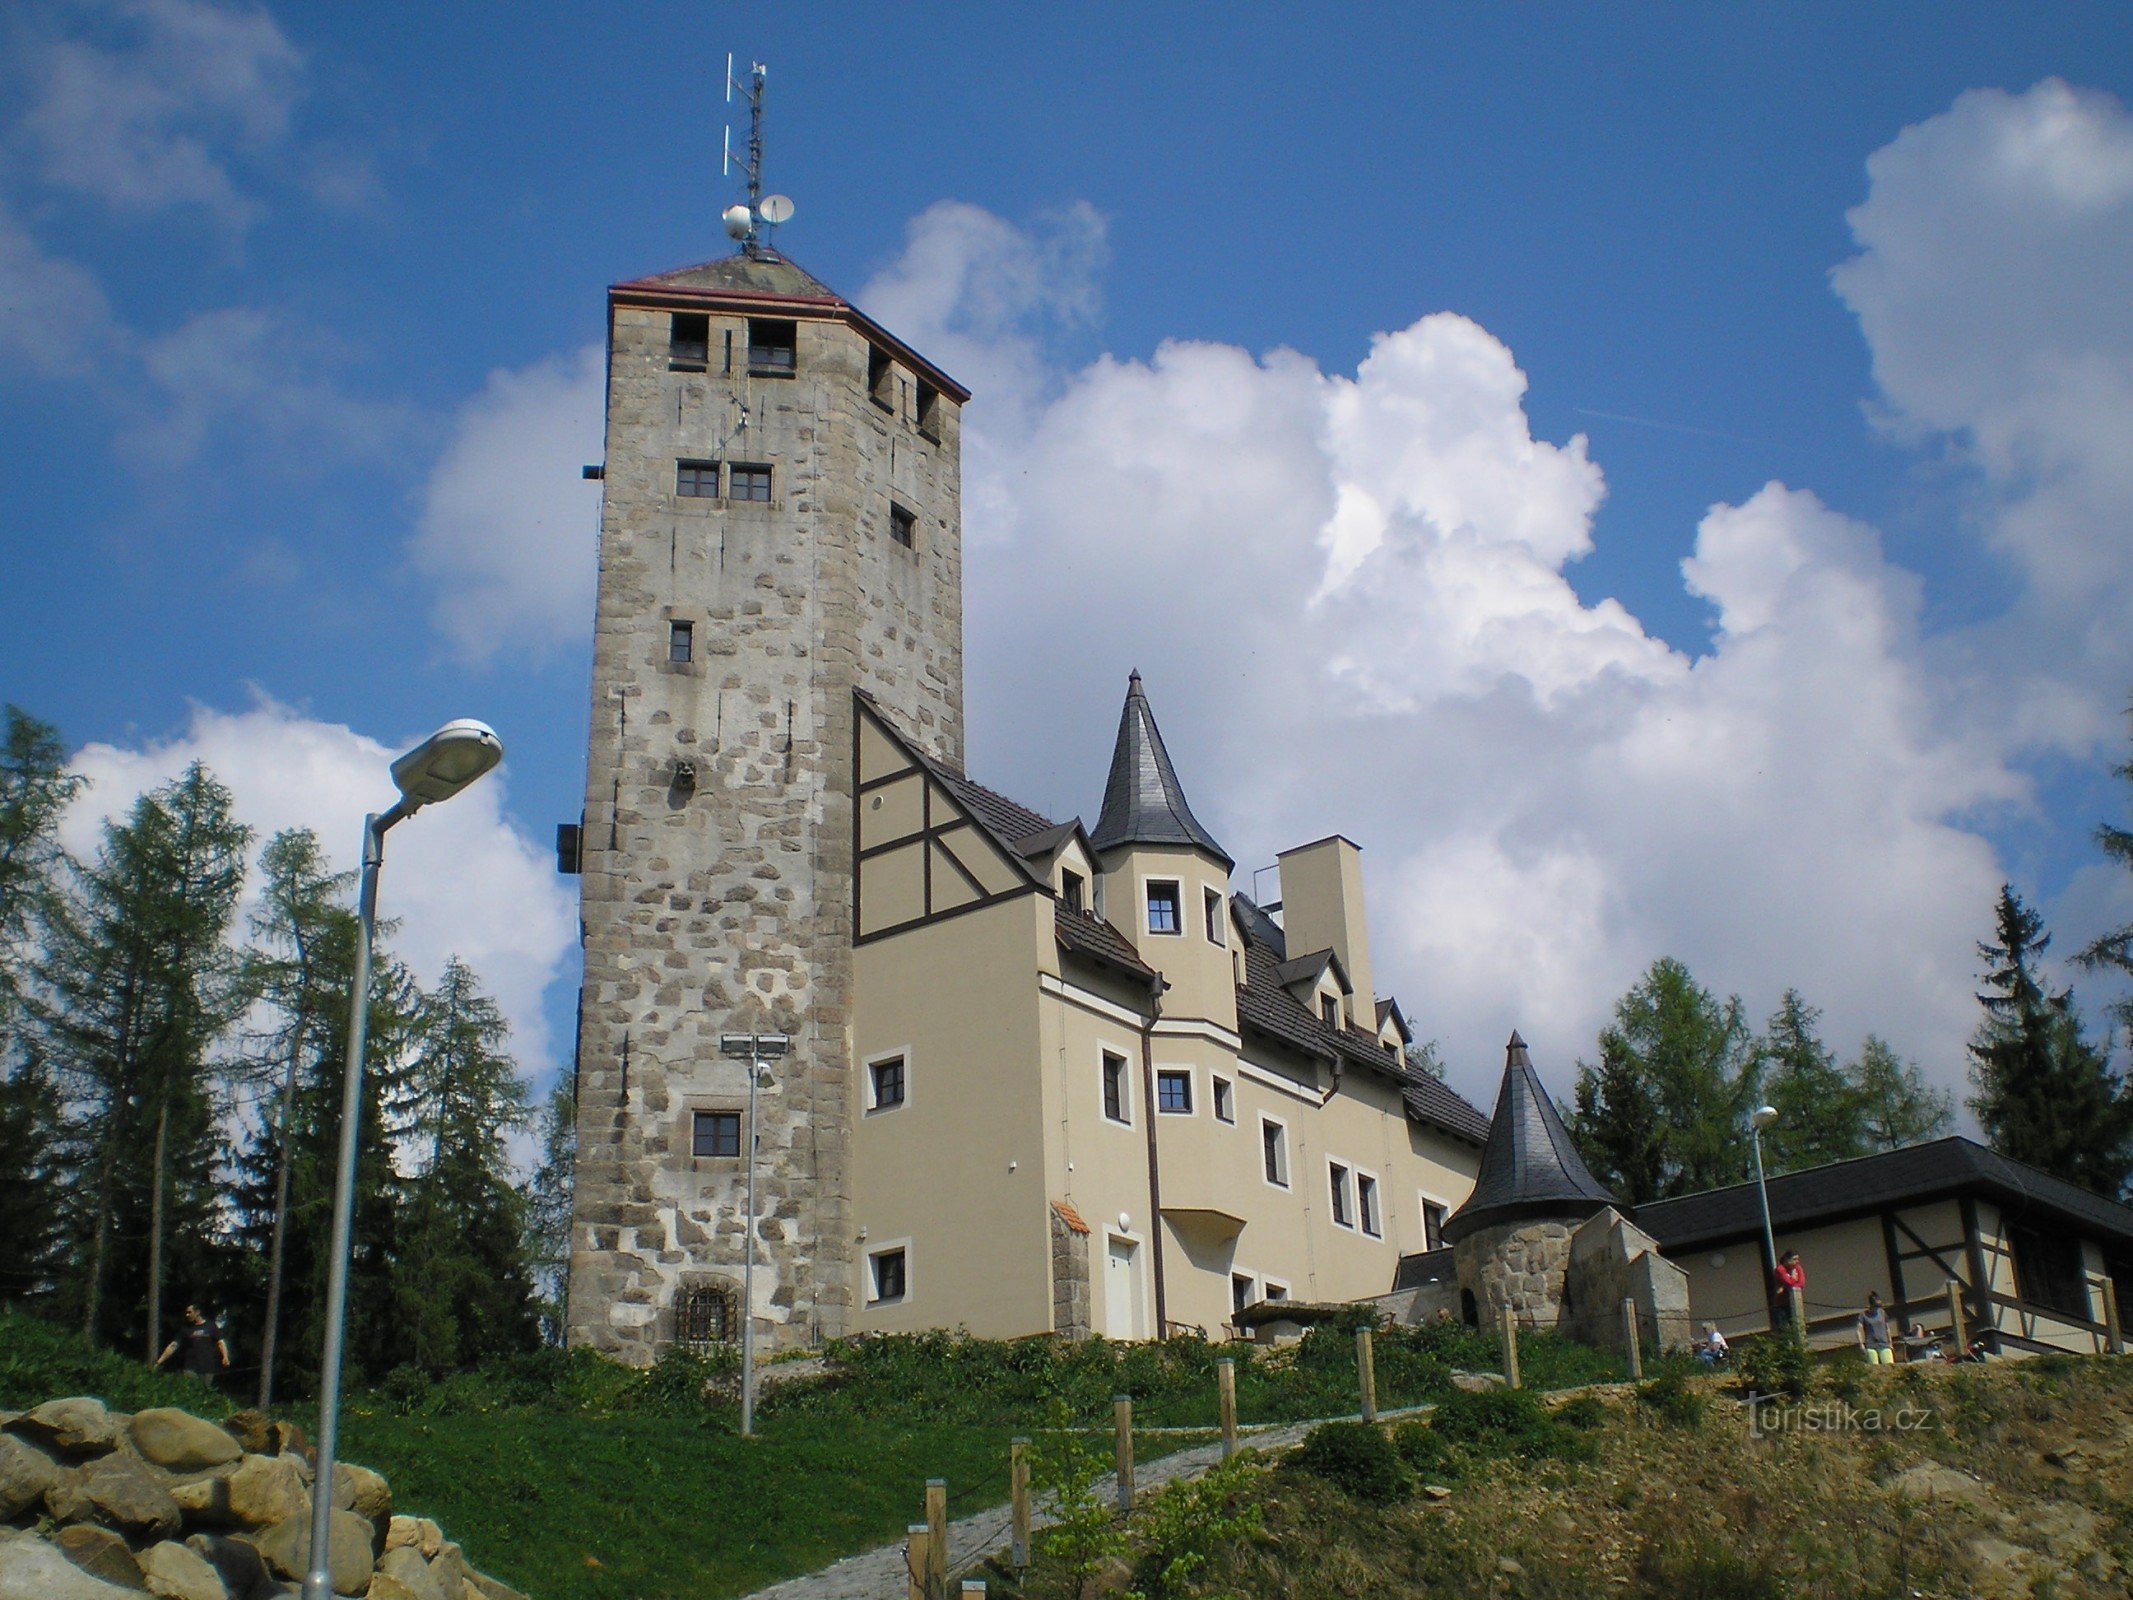 Liberecká víšina lookout tower